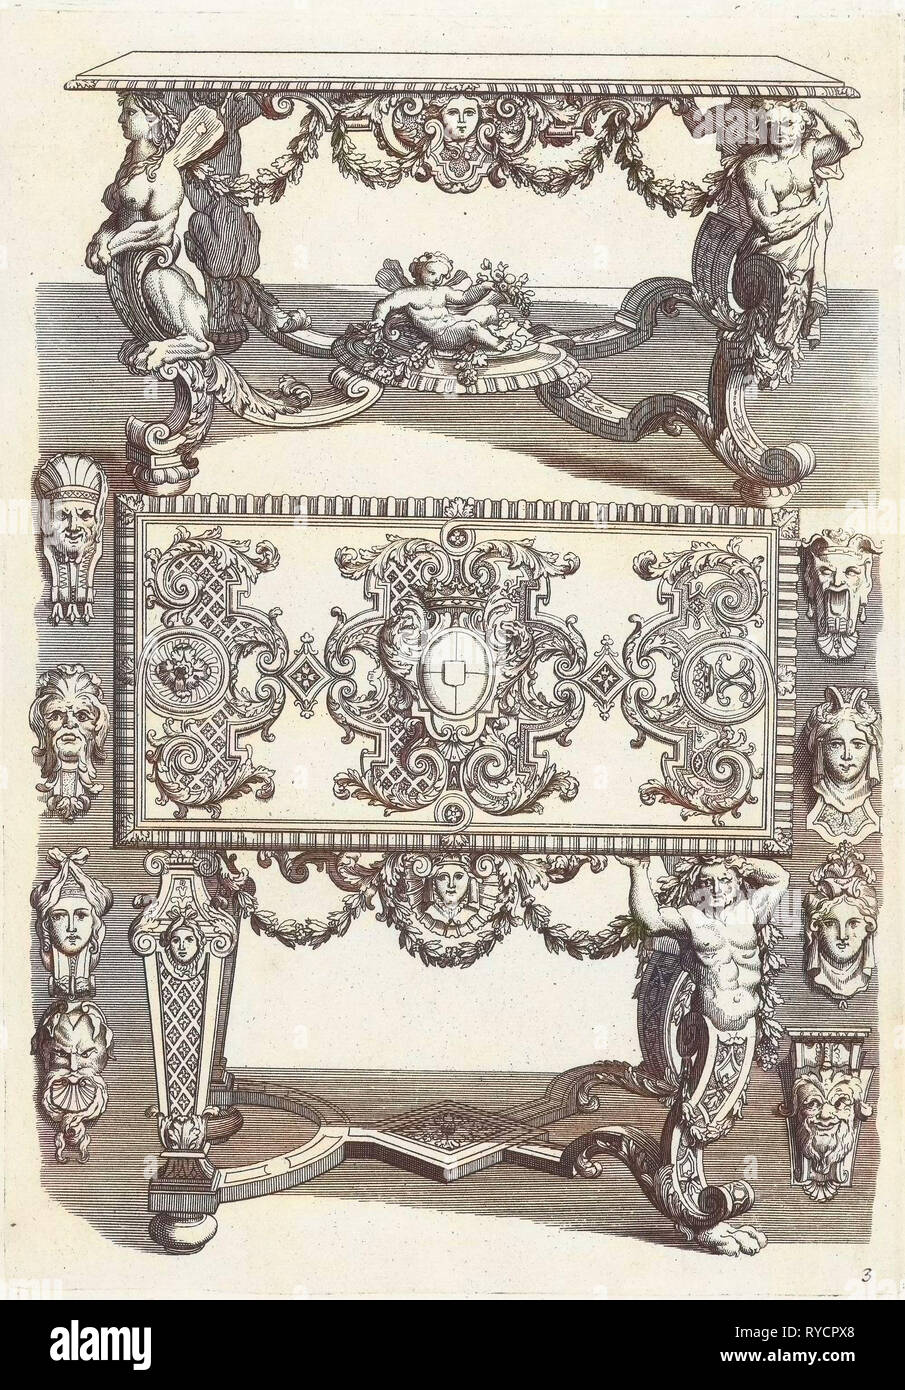 Le tableau supérieur est représenté en perspective, avec la partie inférieure de la table se trouve illustré à la verticale, sur les deux côtés quatre masques sont indiqués, Daniël Marot (I), datant après 1703 - avant 1800 Banque D'Images